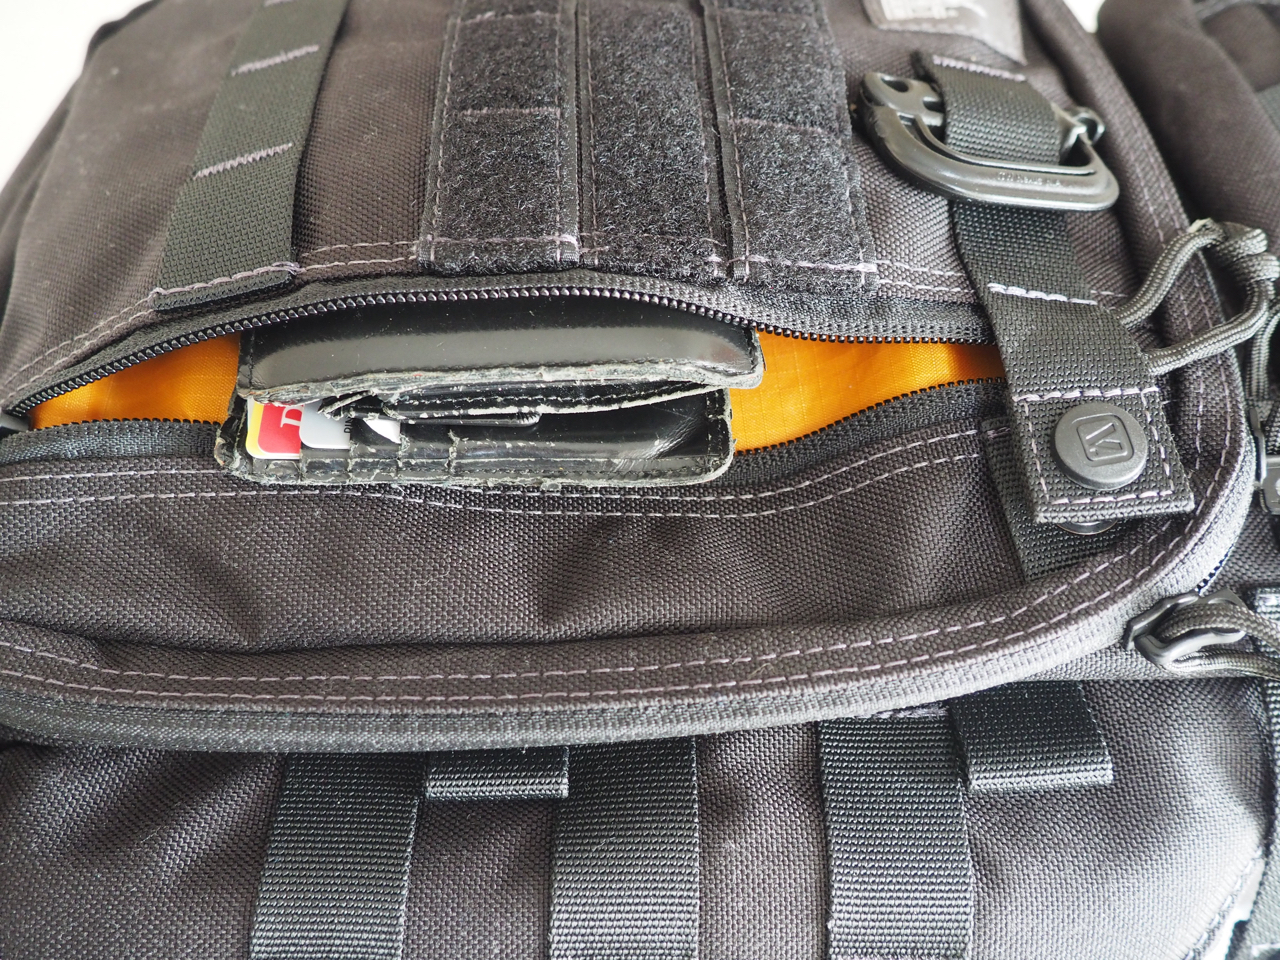 Wallet in the front zip pocket, "lockable"